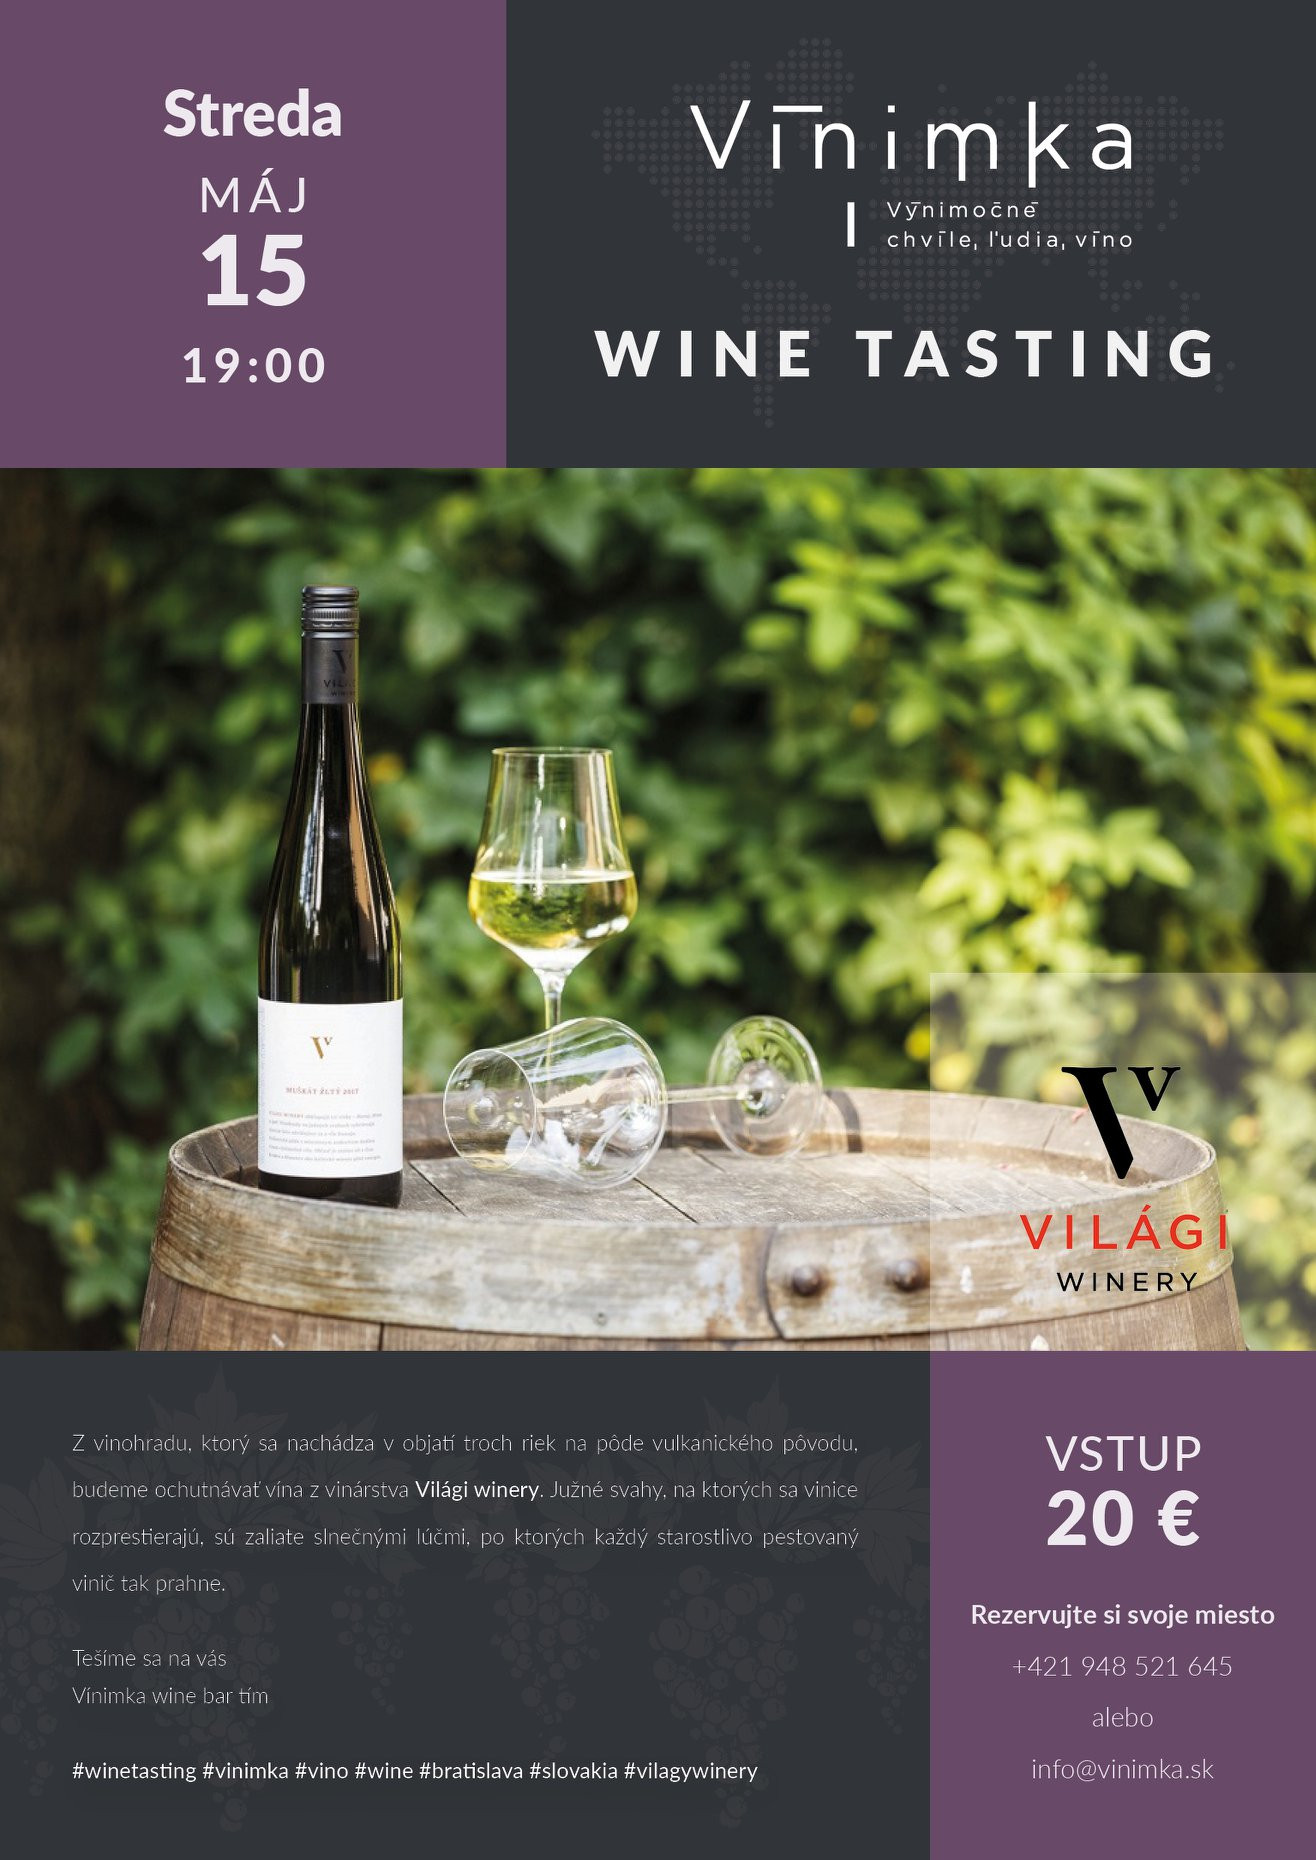 Degustácia Világy winery (15.5.2019)